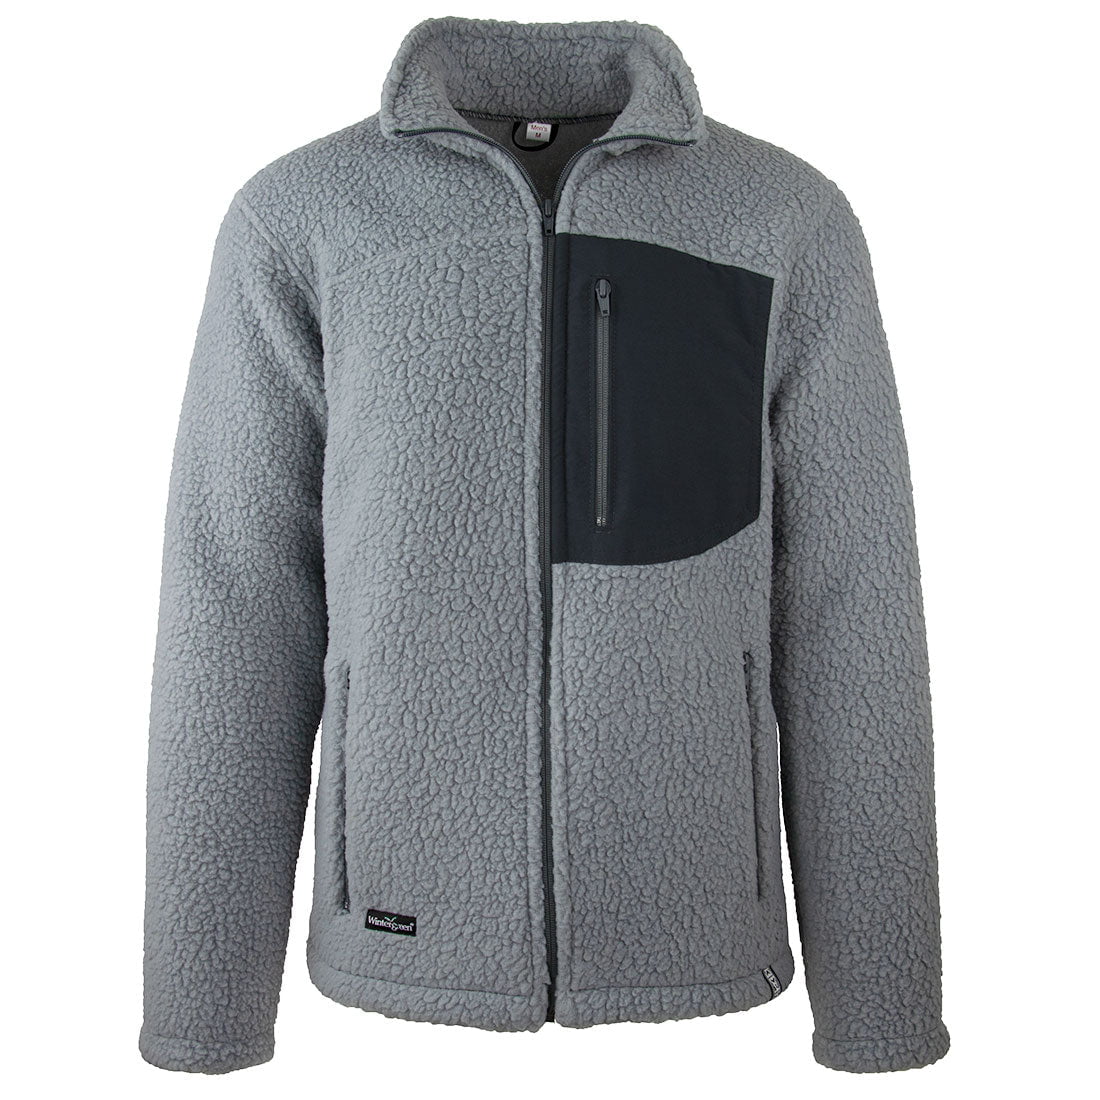 https://www.wintergreennorthernwear.com/cdn/shop/files/wintergreen-northern-wear-jacket-shearling-fleece-jacket-men-s-40715613110489.jpg?v=1692046443